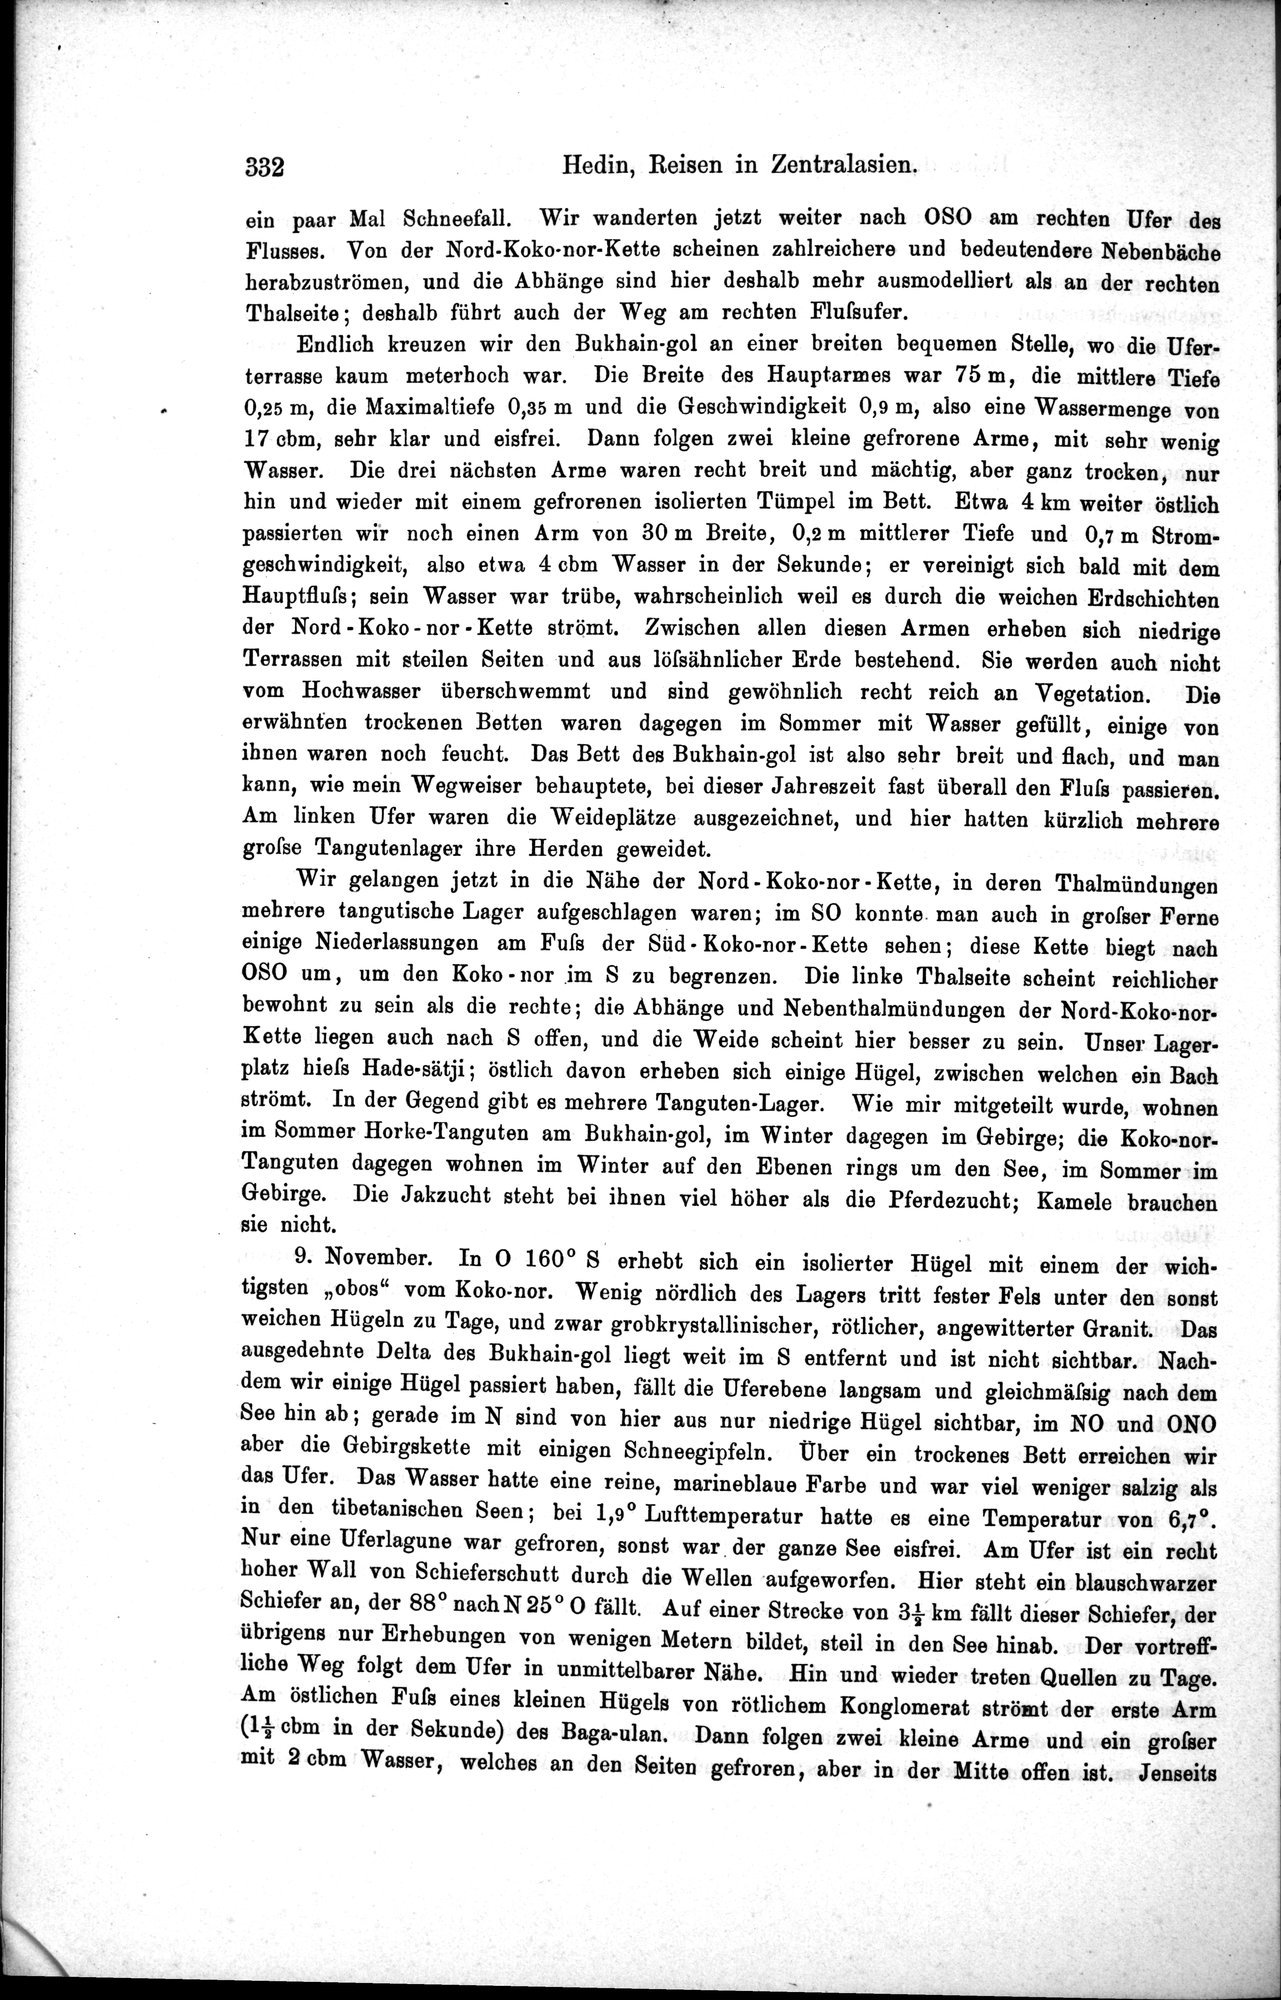 Die Geographische-Wissenschaftlichen Ergebnisse meiner Reisen in Zentralasien, 1894-1897 : vol.1 / Page 344 (Grayscale High Resolution Image)